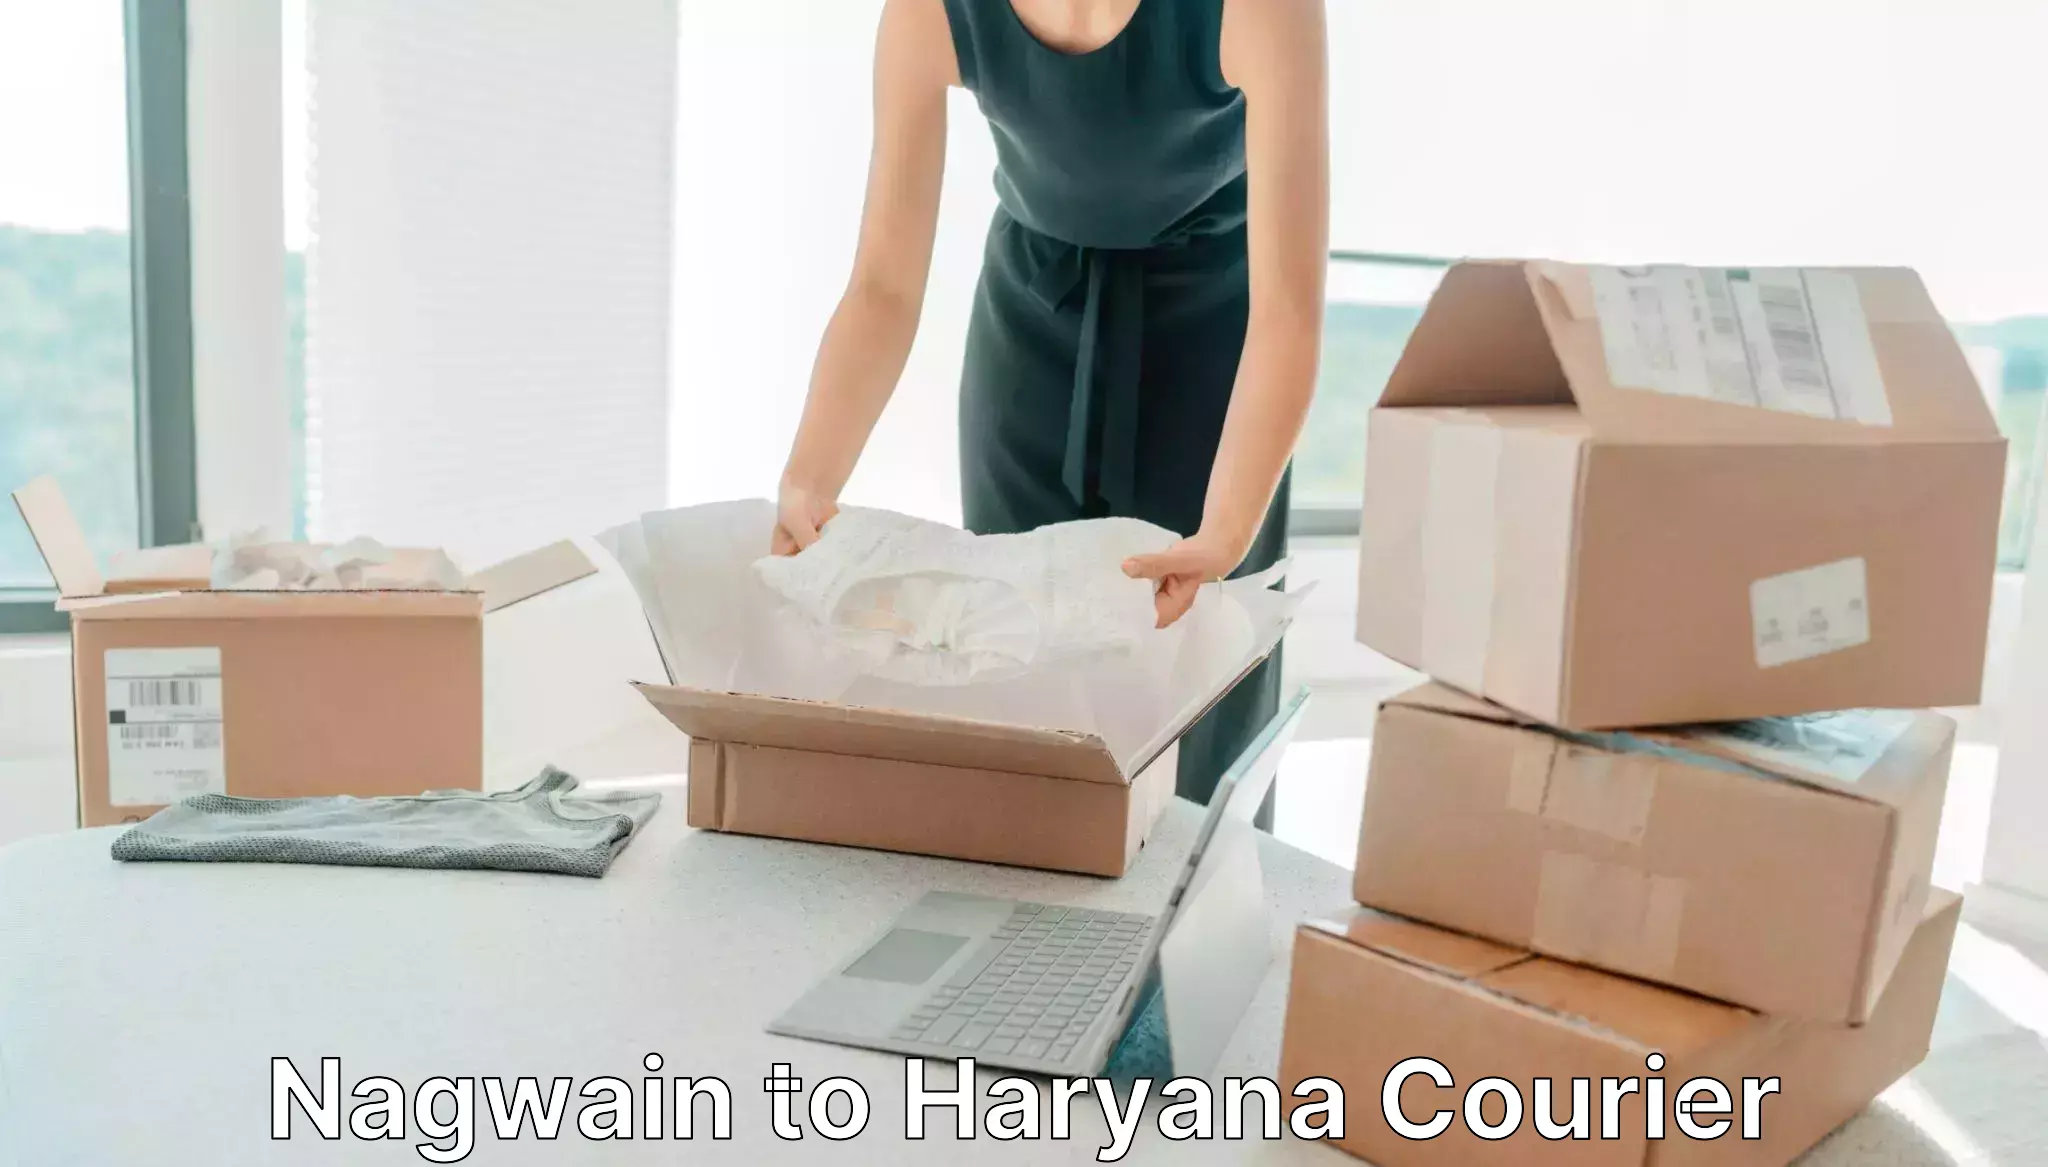 Enhanced delivery experience Nagwain to Narwana